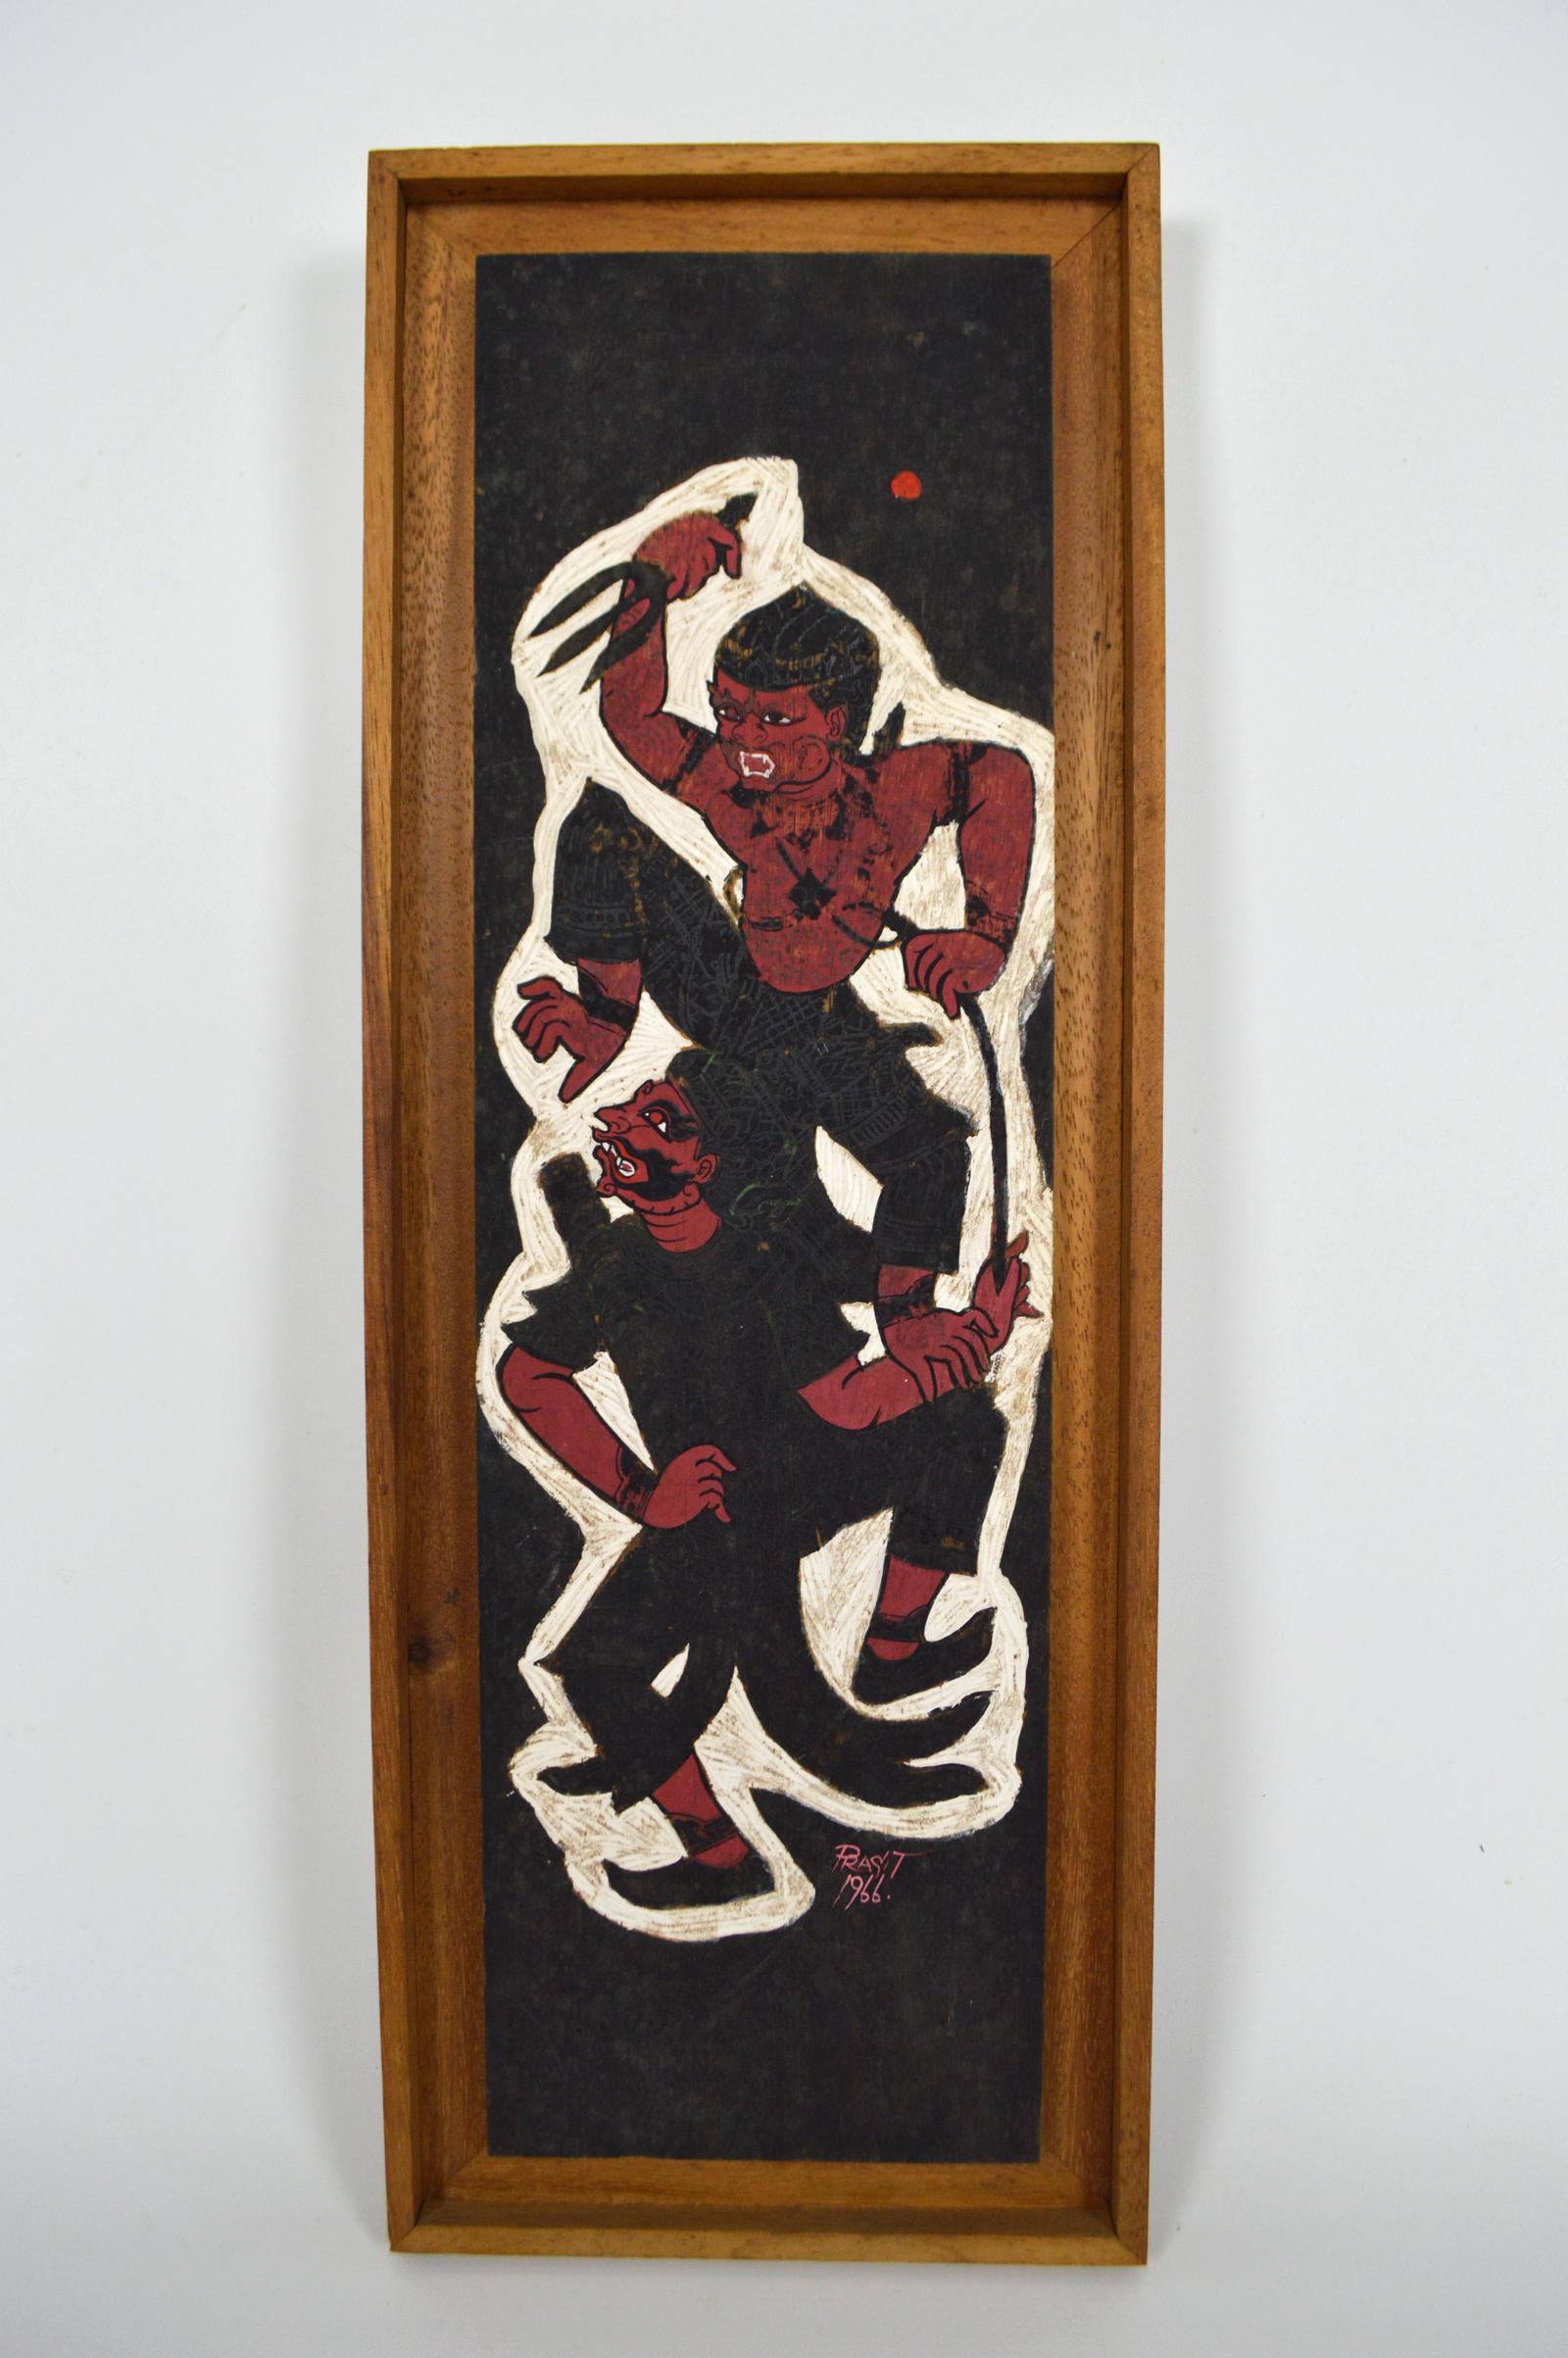 In Schwarz-, Rot- und Weißtönen bemalte Holztafel.
Das Gemälde stellt eine Szene aus der Hindu-Mythologie dar: Wir sehen Hanuman, den Affengott, im Kampf gegen einen Dämon.

Signiert und datiert: 